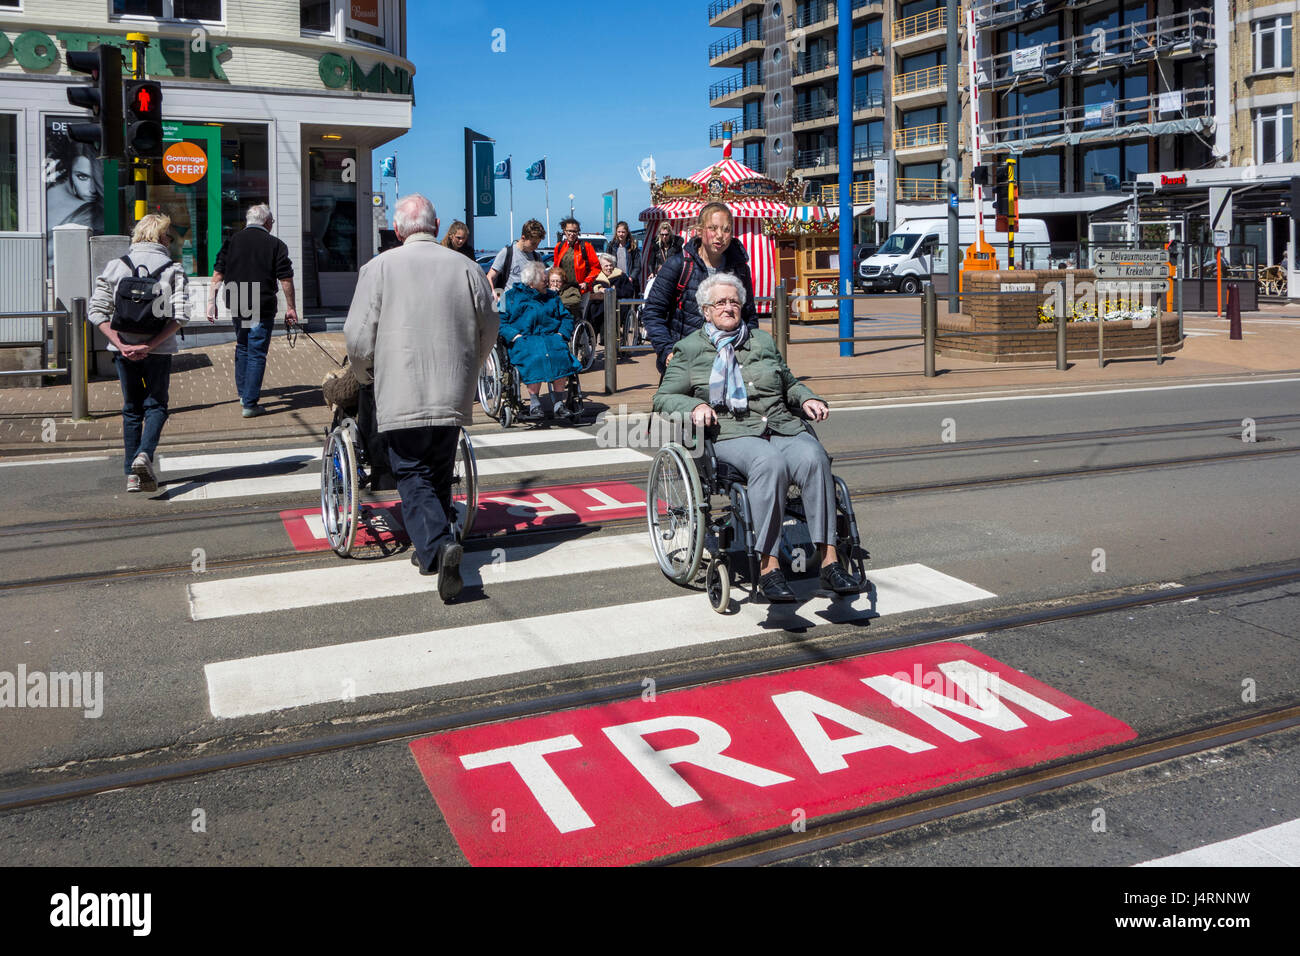 Gruppe der älteren Behinderten im Rollstuhl durchqueren Straße über Fußgängerüberweg / Zebrastreifen in der Stadt Stockfoto